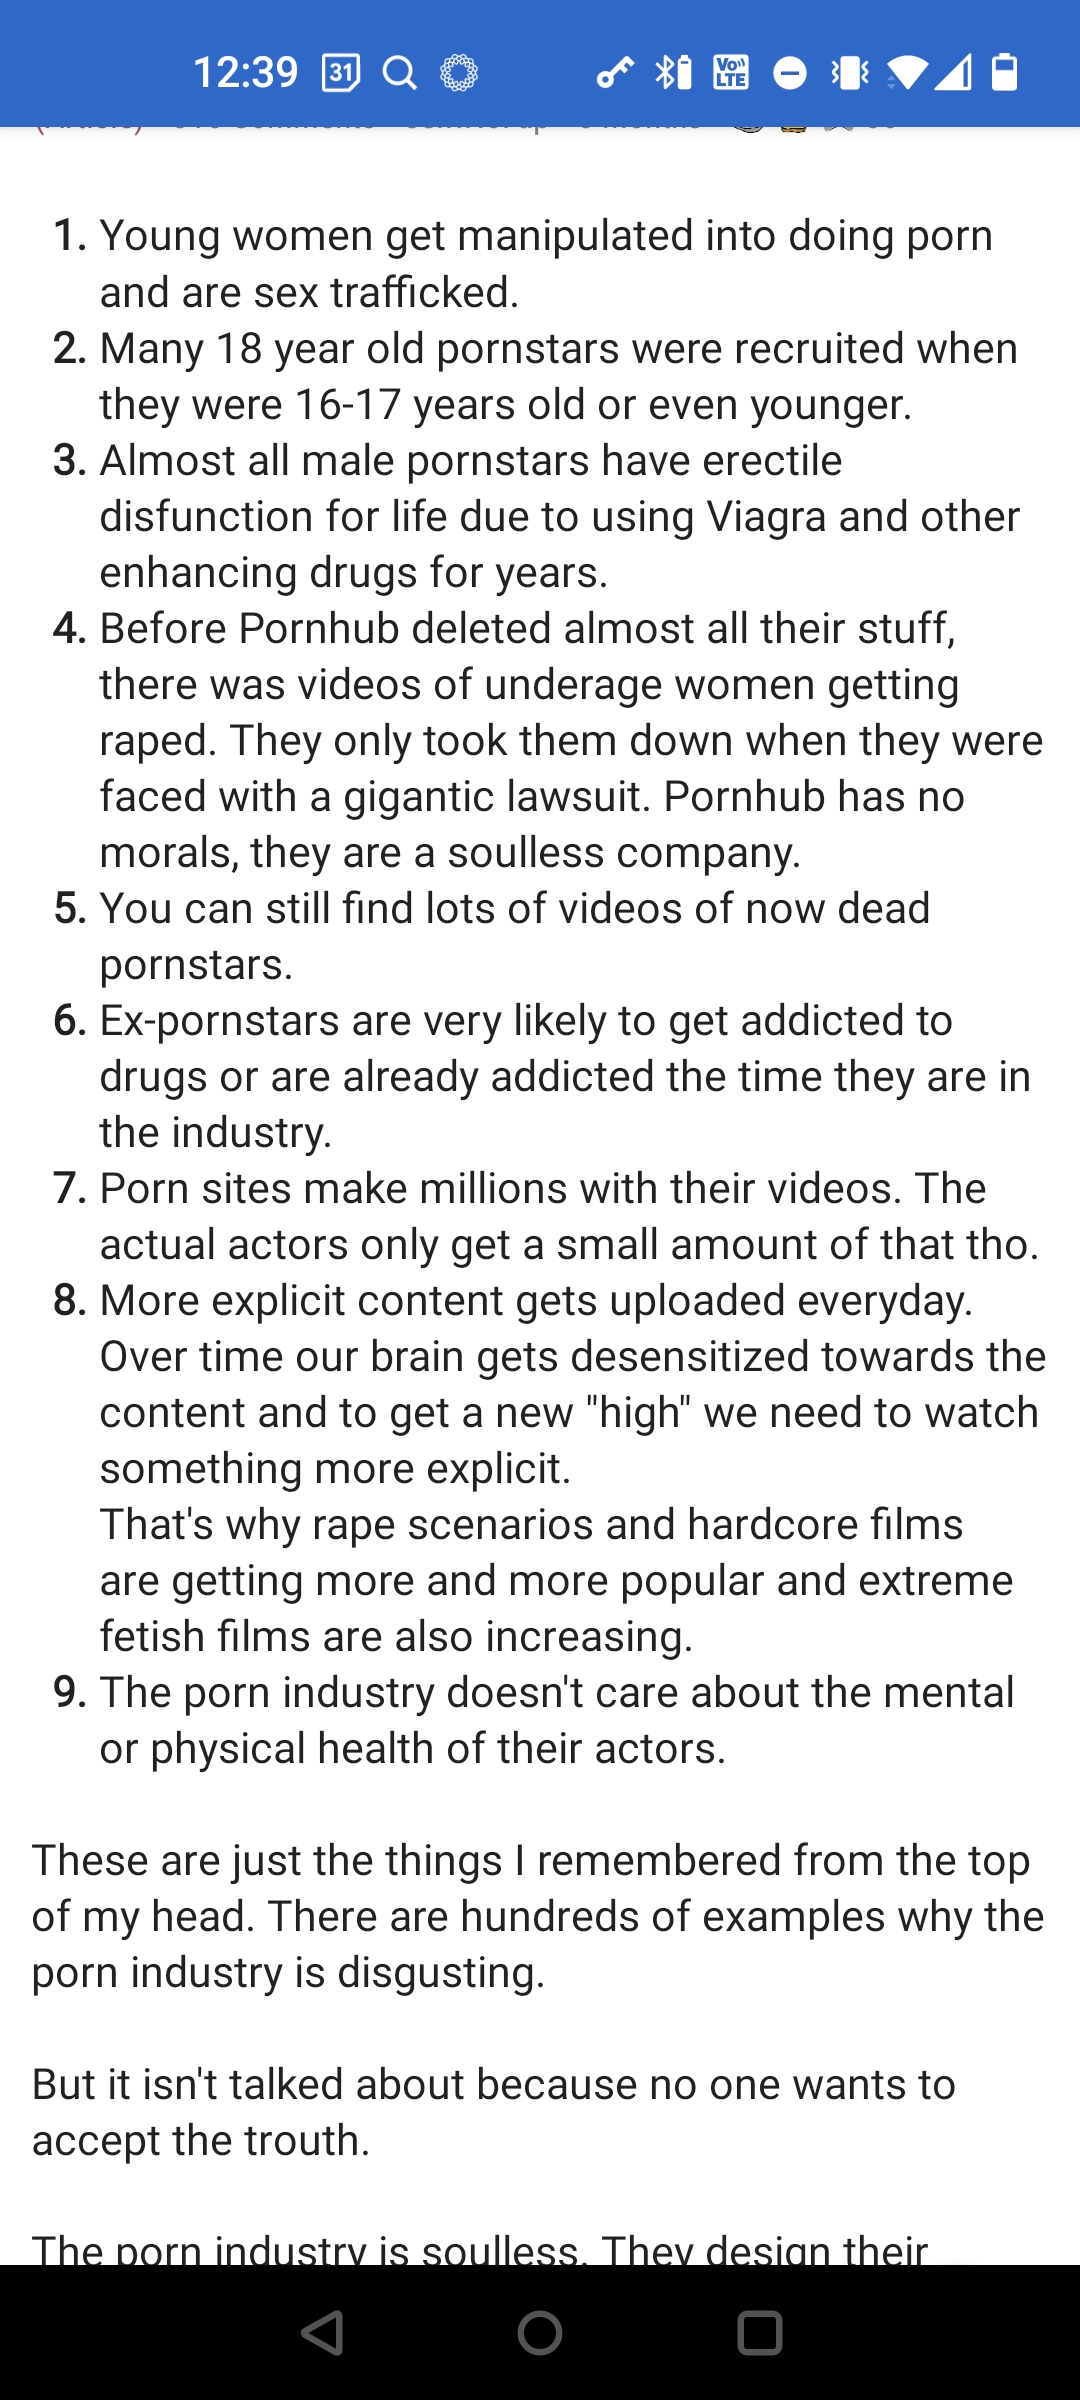 Porno i forhold og om porno generelt - Skråblikk og generaliseringer